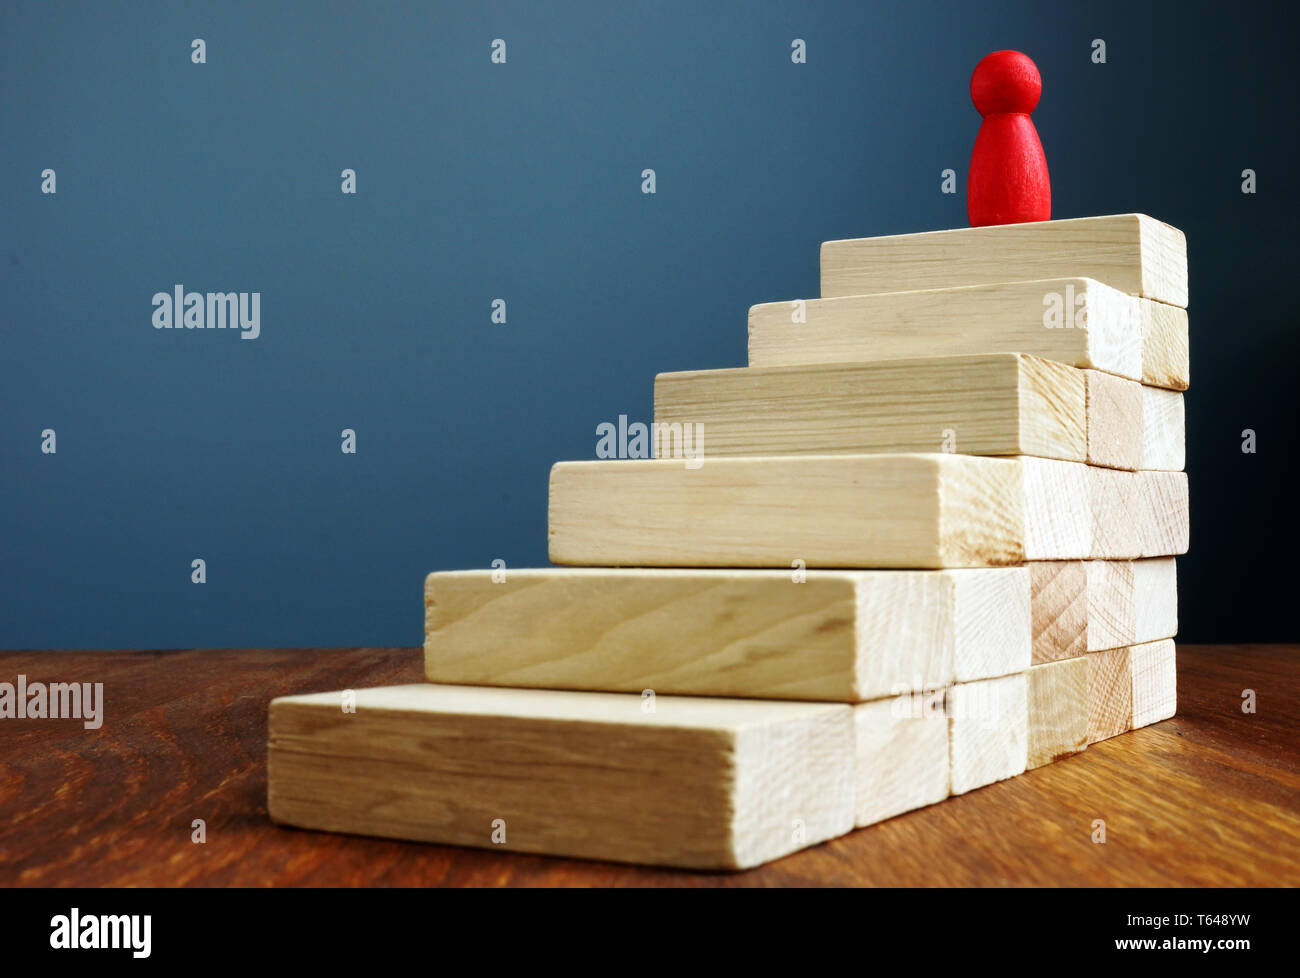 Persönliche Entwicklung und Wachstum, Erfolg in der Karriere Konzepte. Treppen und rote Figur als Symbol von Leader. Stockfoto